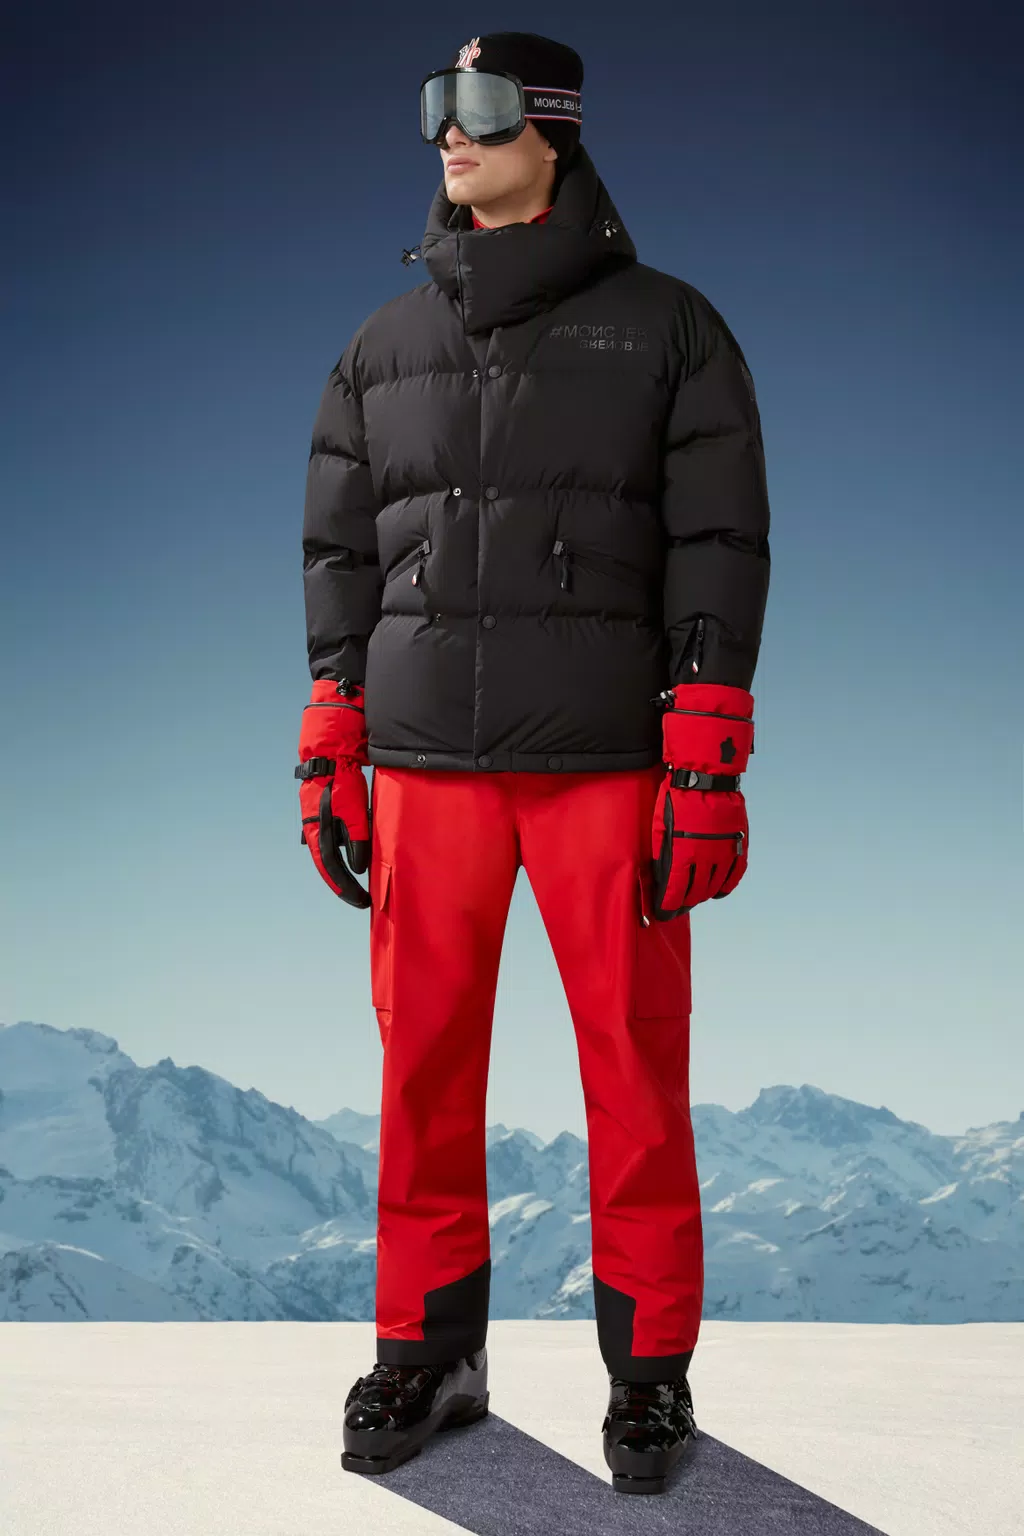 Lapaz technical ski jacket in black - Moncler Grenoble